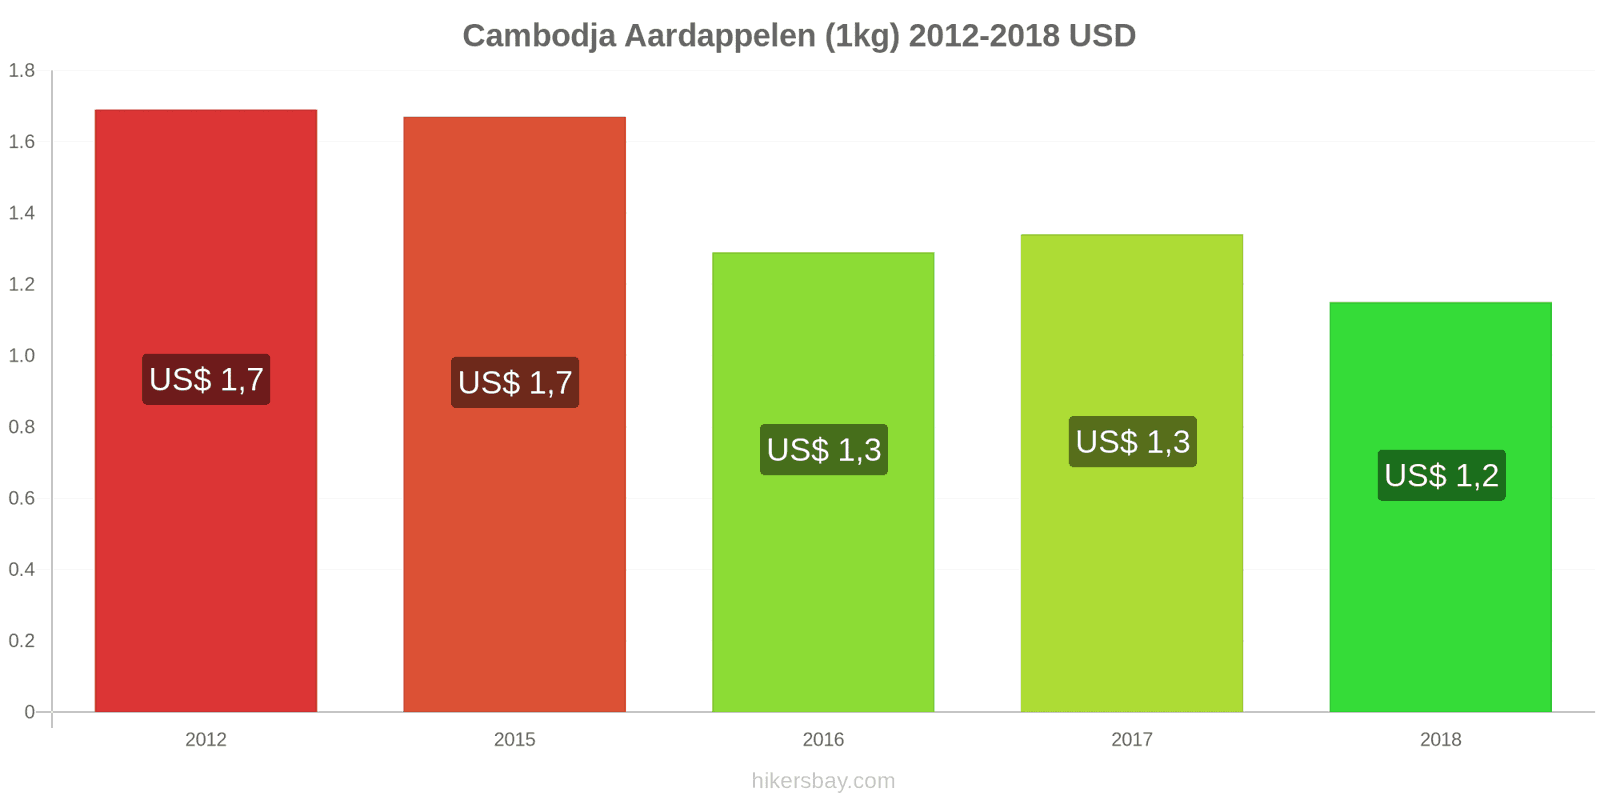 Cambodja prijswijzigingen Aardappelen (1kg) hikersbay.com